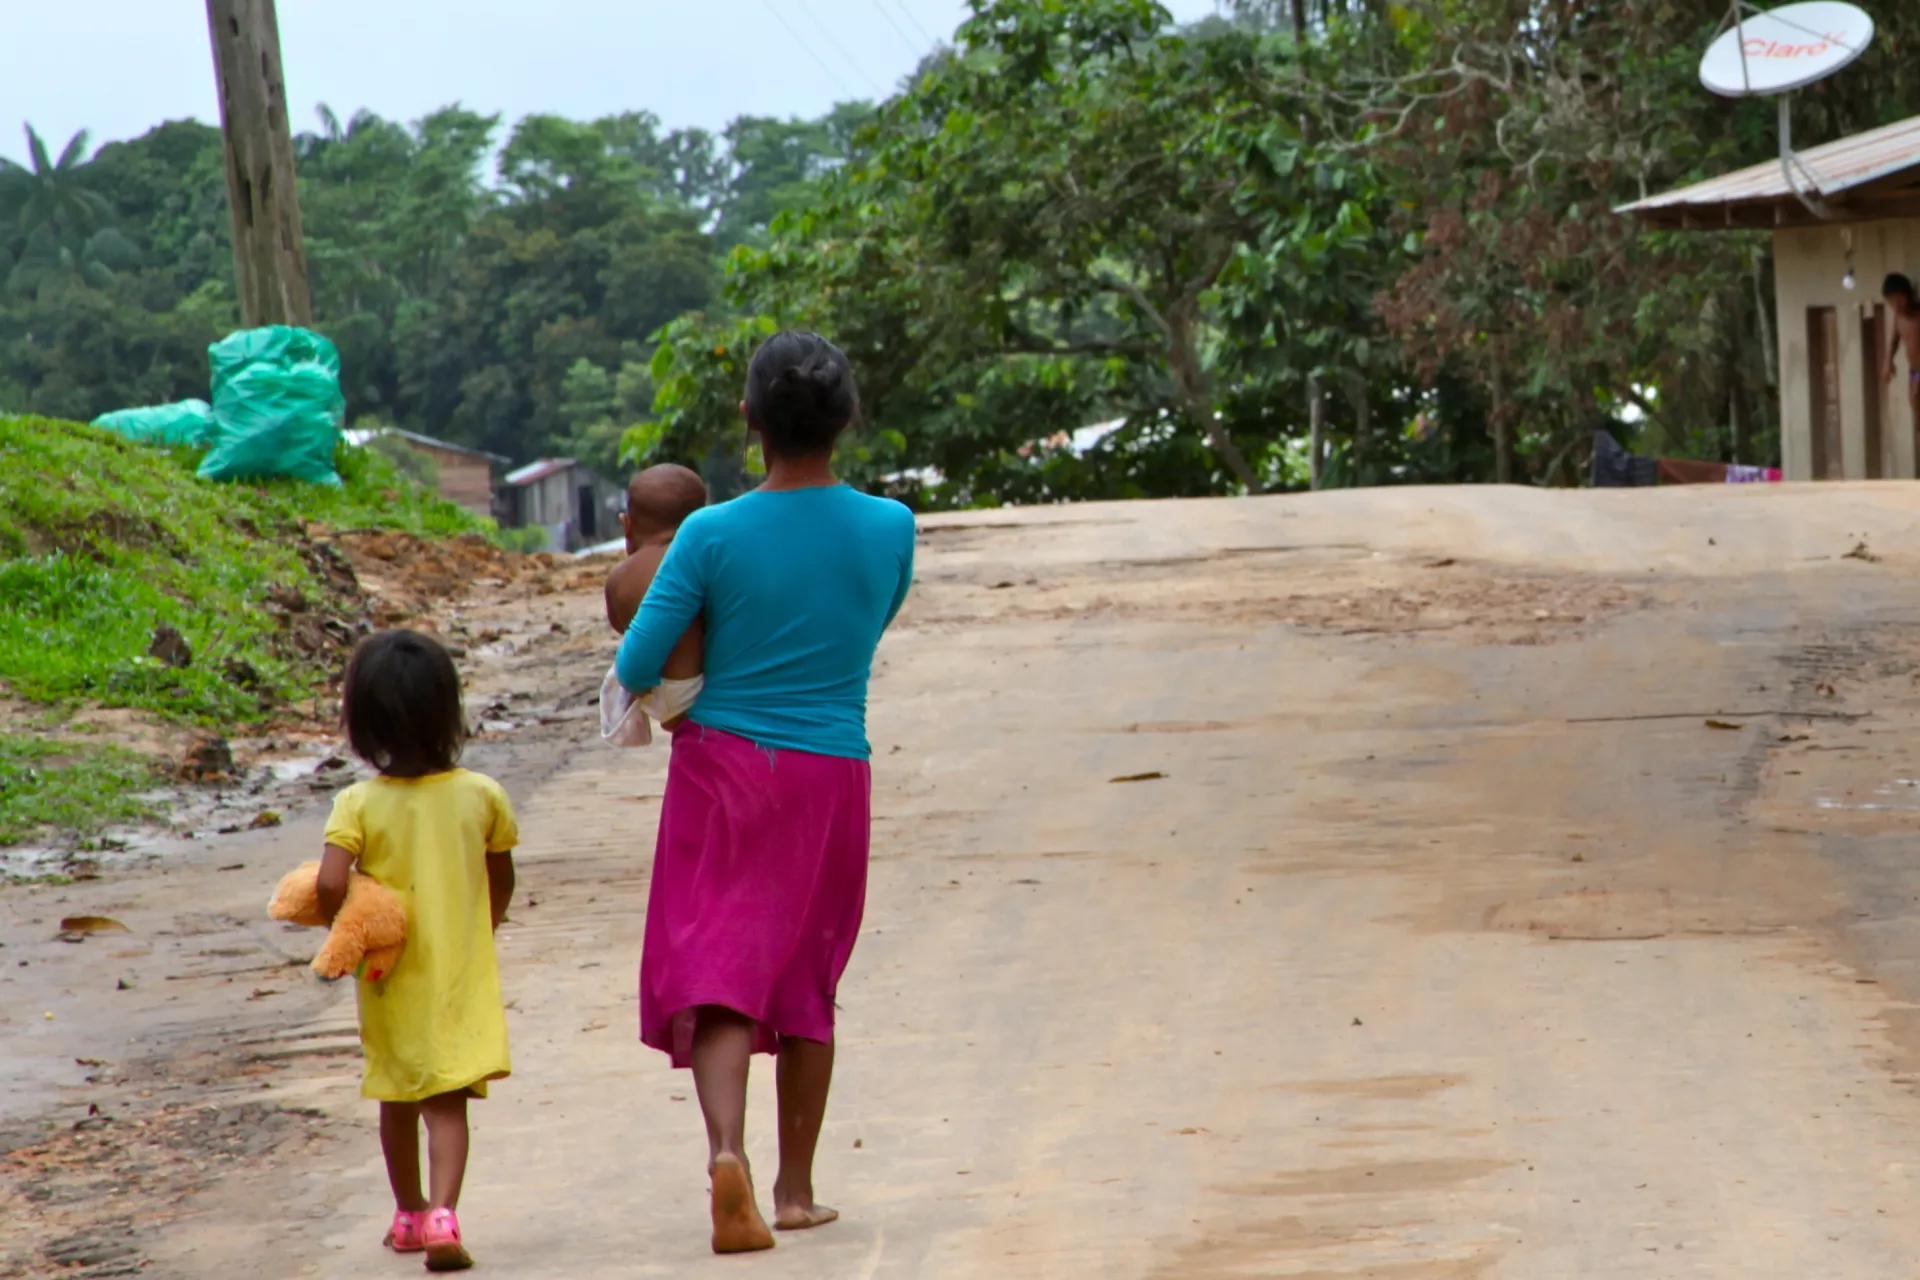 Mulher indígena caminha em estrada de terra com seu bebê no colo e sua filha pequena ao lado